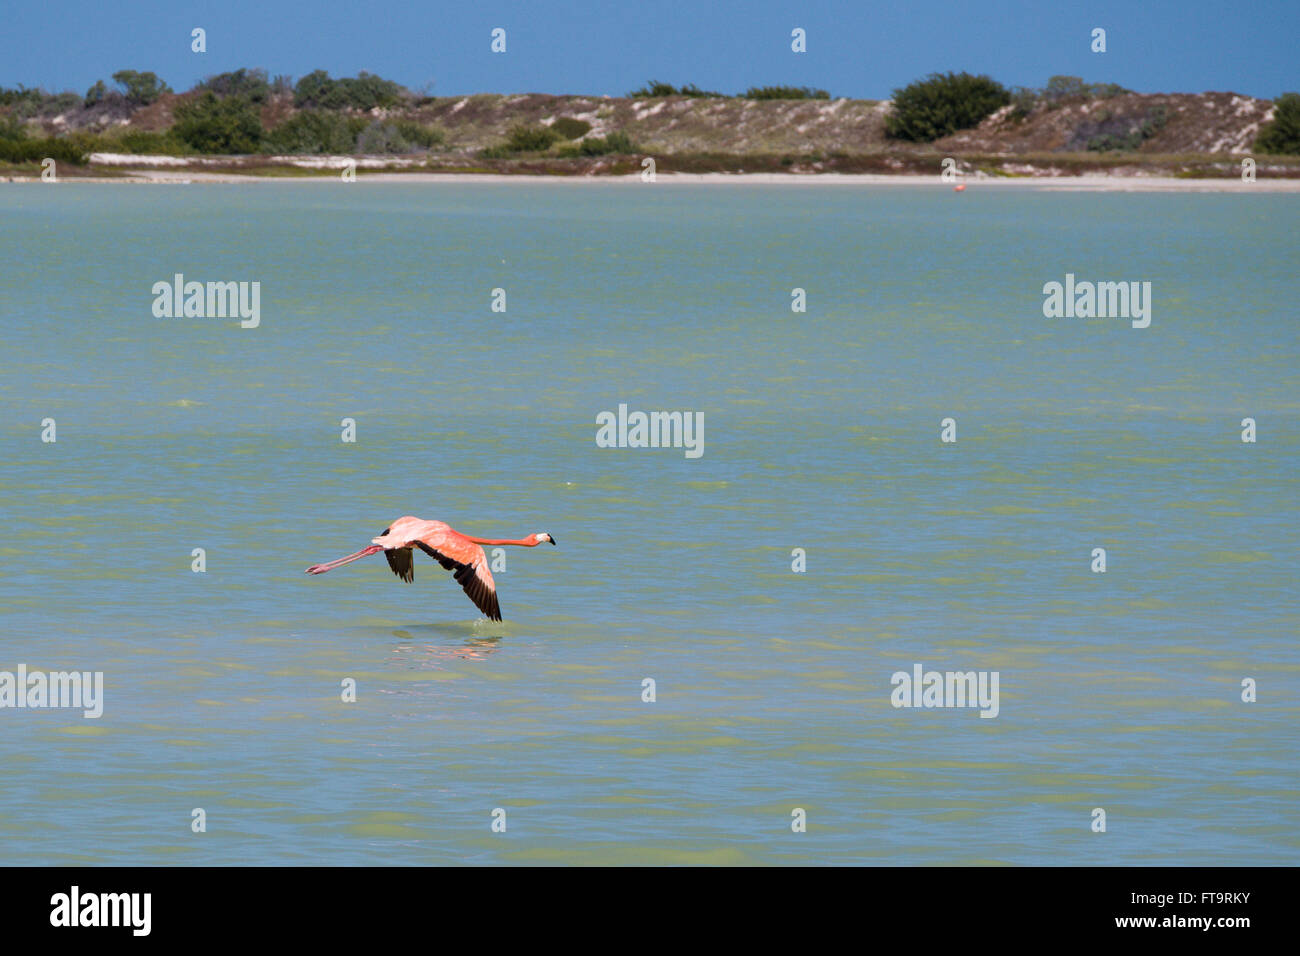 Einsamer Flamingo zur Landung herein. Ein einziger Vogel flattert niedrig über dem Wasser der Lagune in ein Landeanflug. Stockfoto